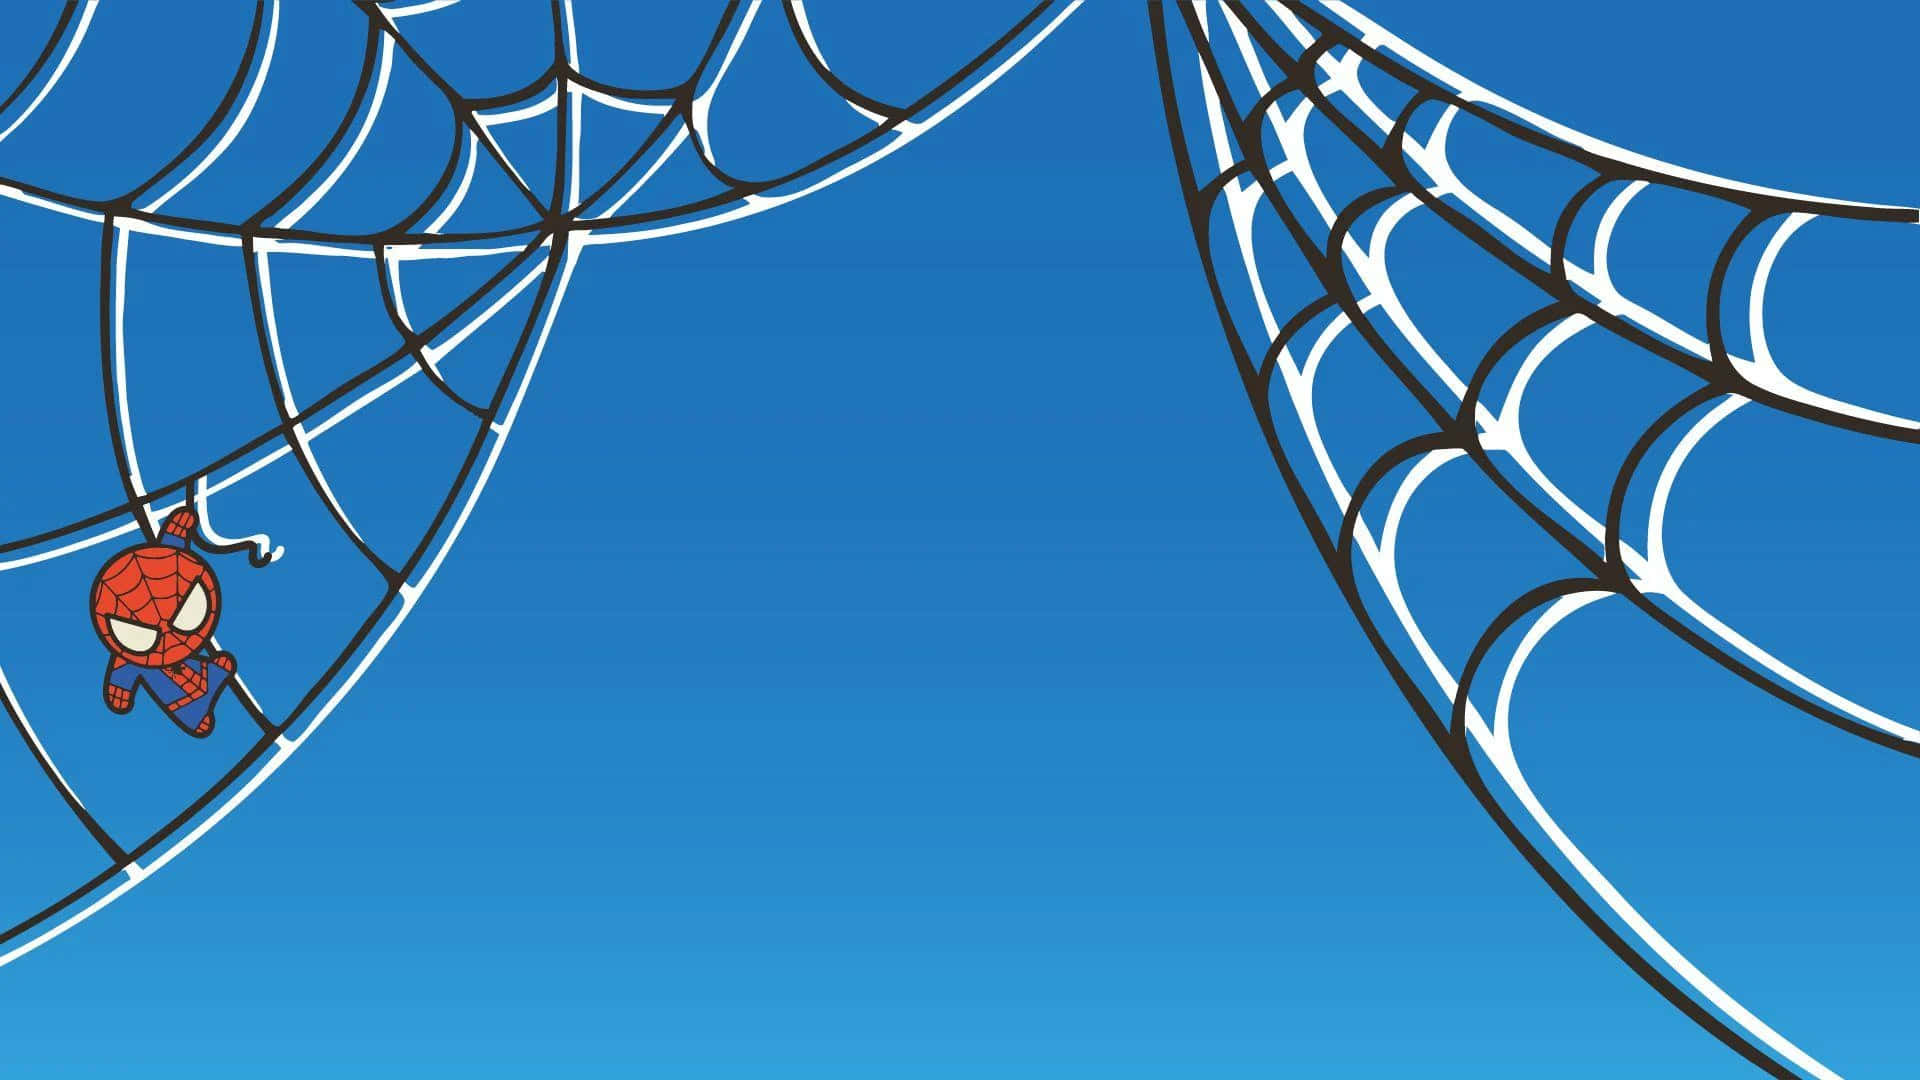 Spiderman Espectacular En Azul. Fondo de pantalla